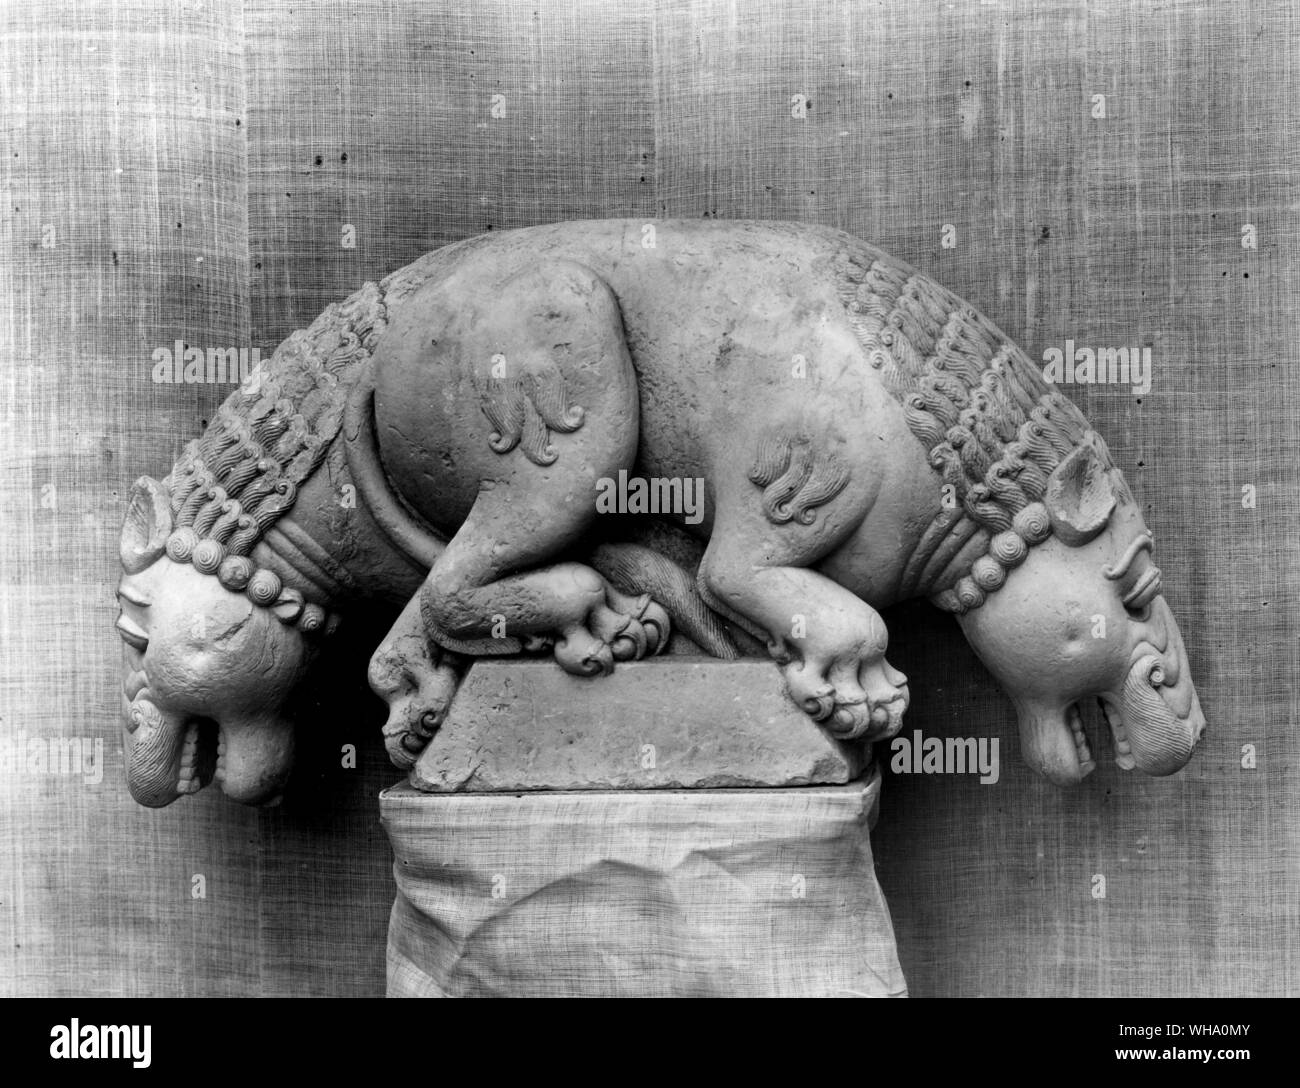 León doble capital en arenisca de la fortaleza de Gwalior. 6-7 ANUNCIO del siglo. A partir de una exposición de arte indio, Asia. Foto de stock